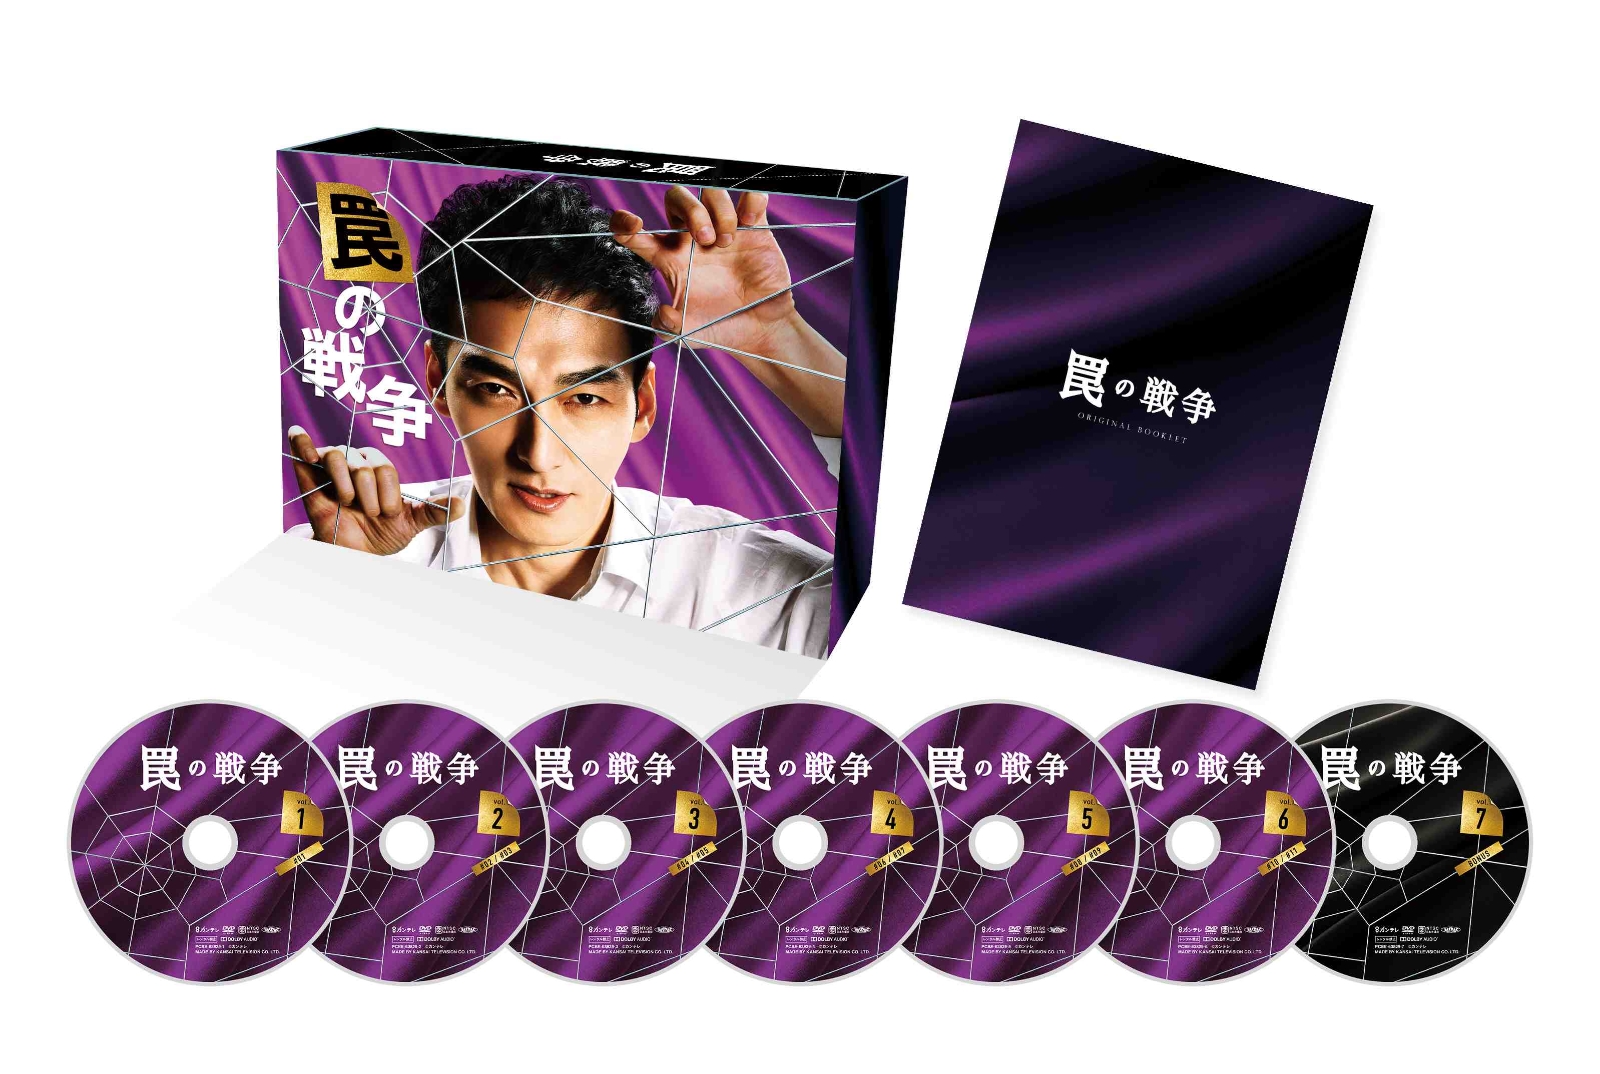 楽天ブックス: 罠の戦争 DVD BOX - 草ナギ剛 - 4524135122094 : DVD